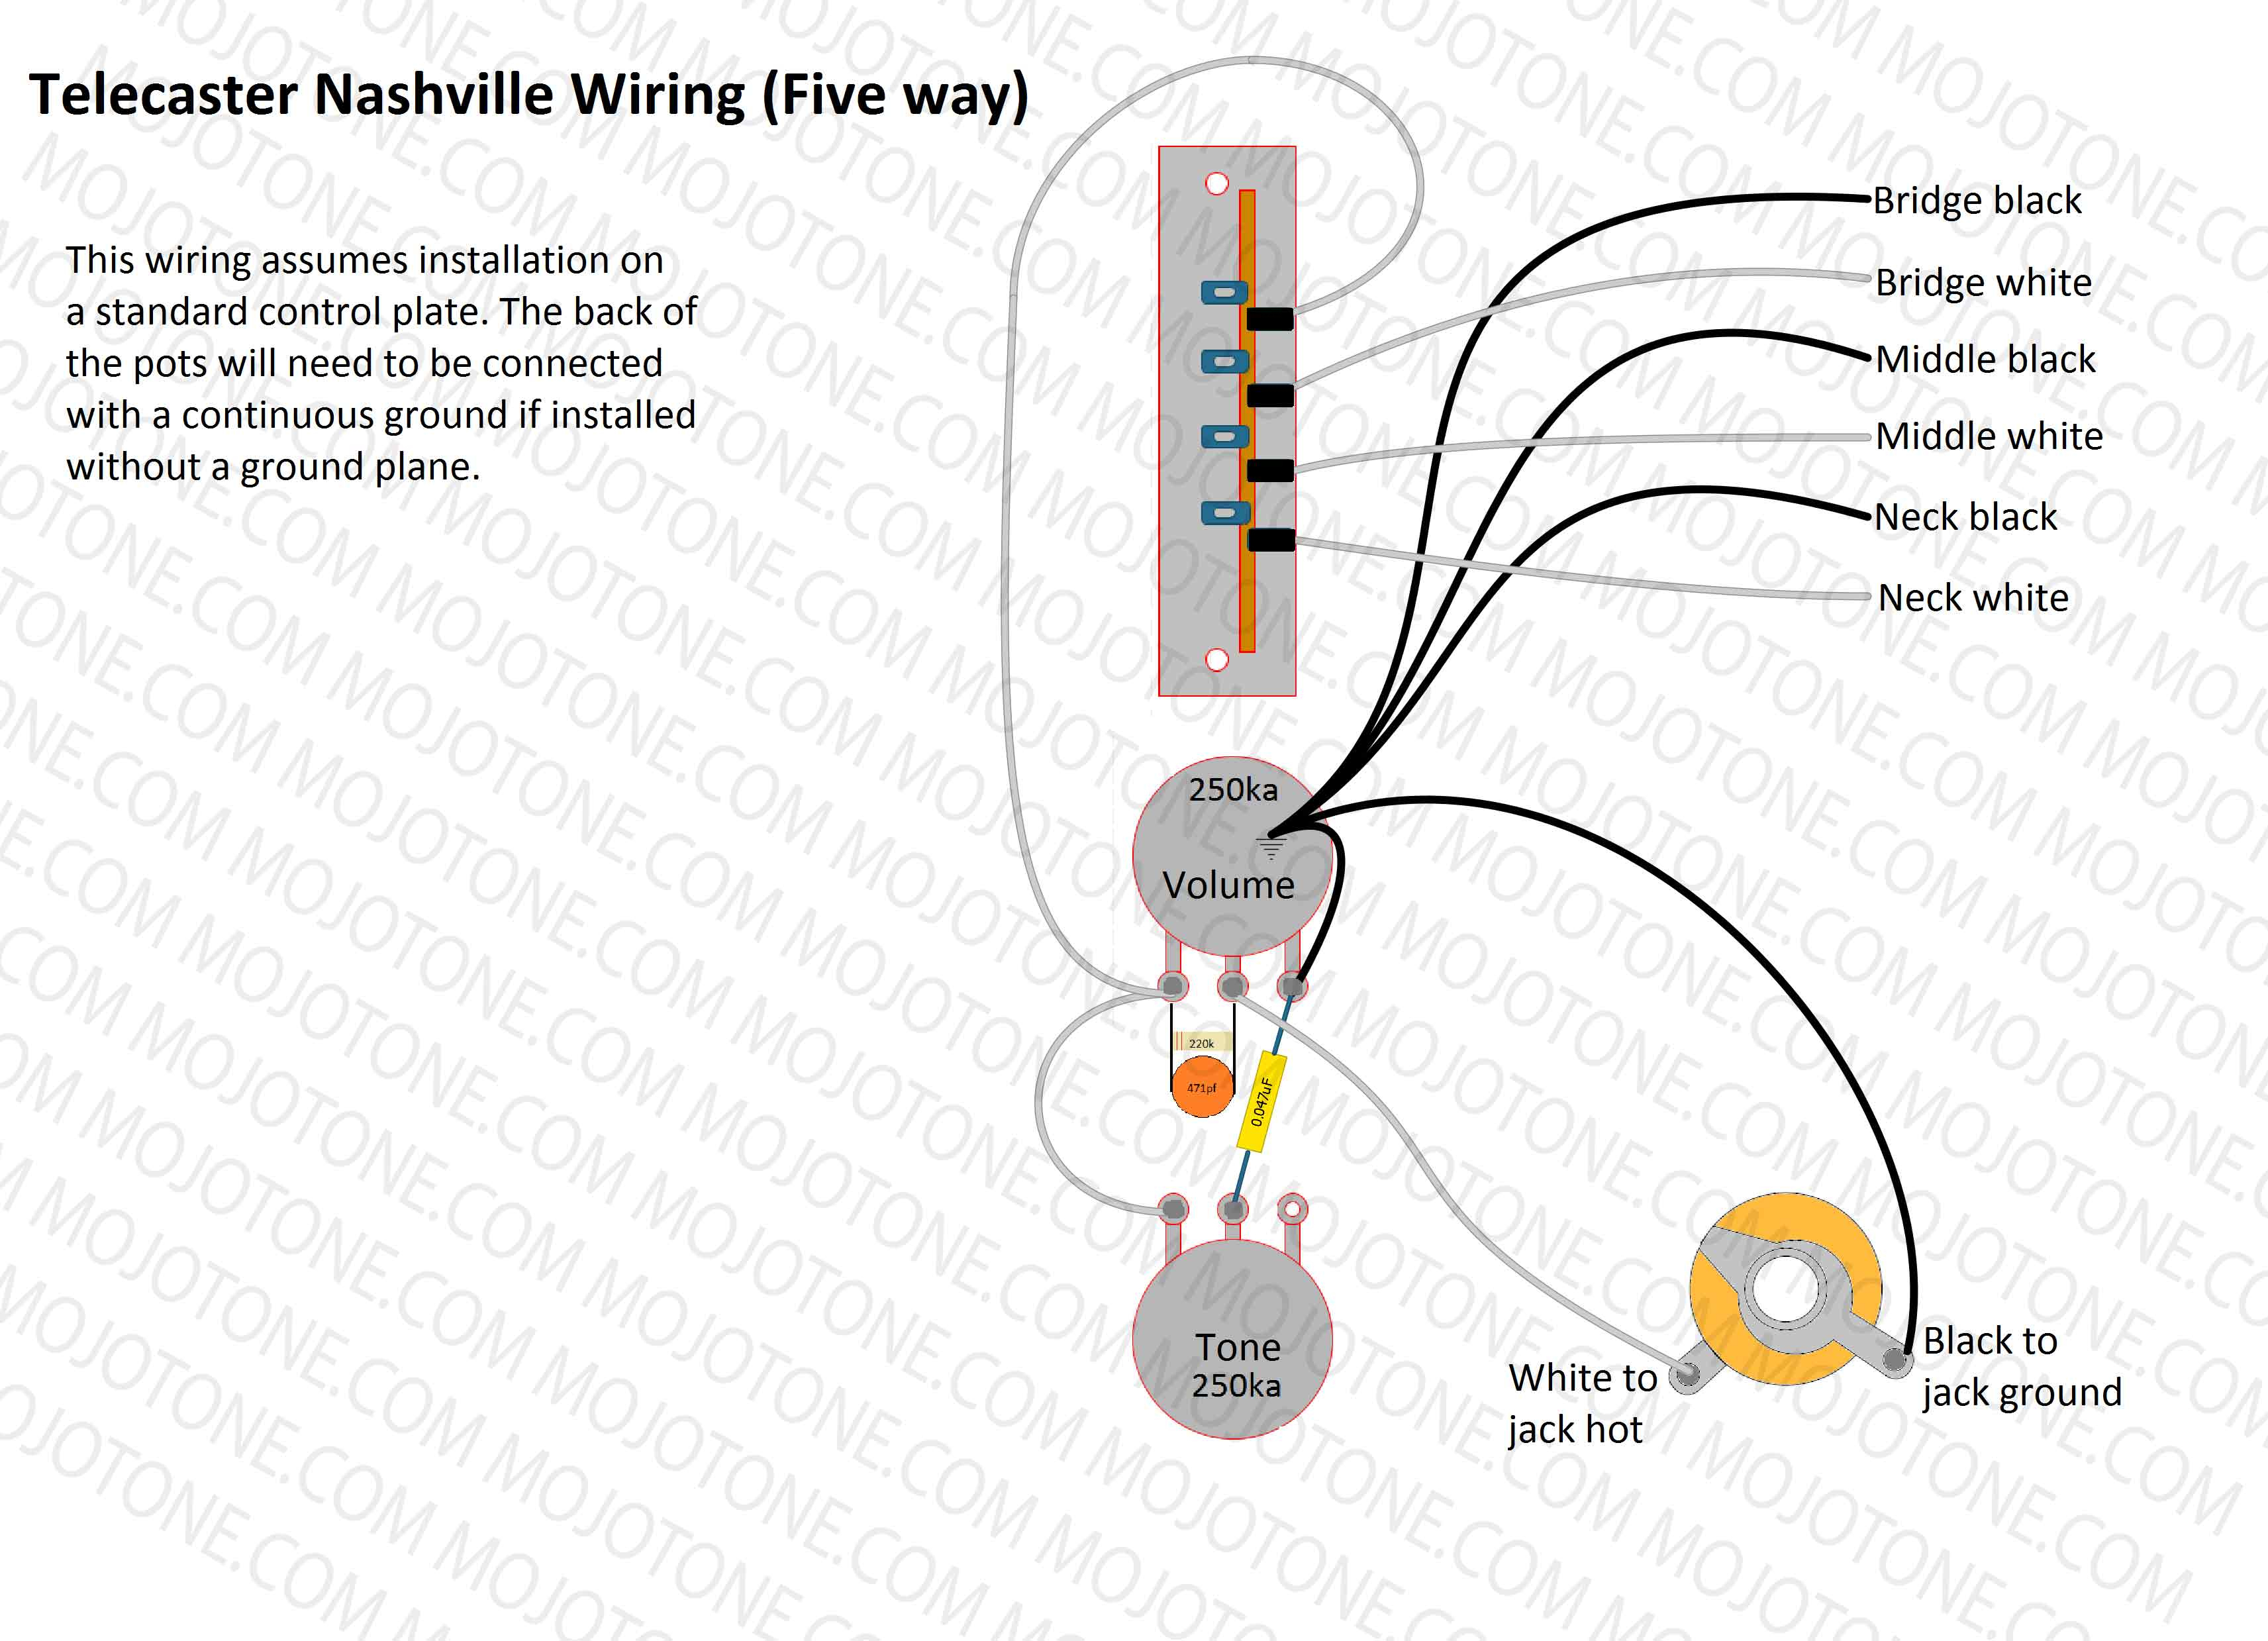 Telecaster Nashville Wiring Diagram - Tele Wiring Diagram